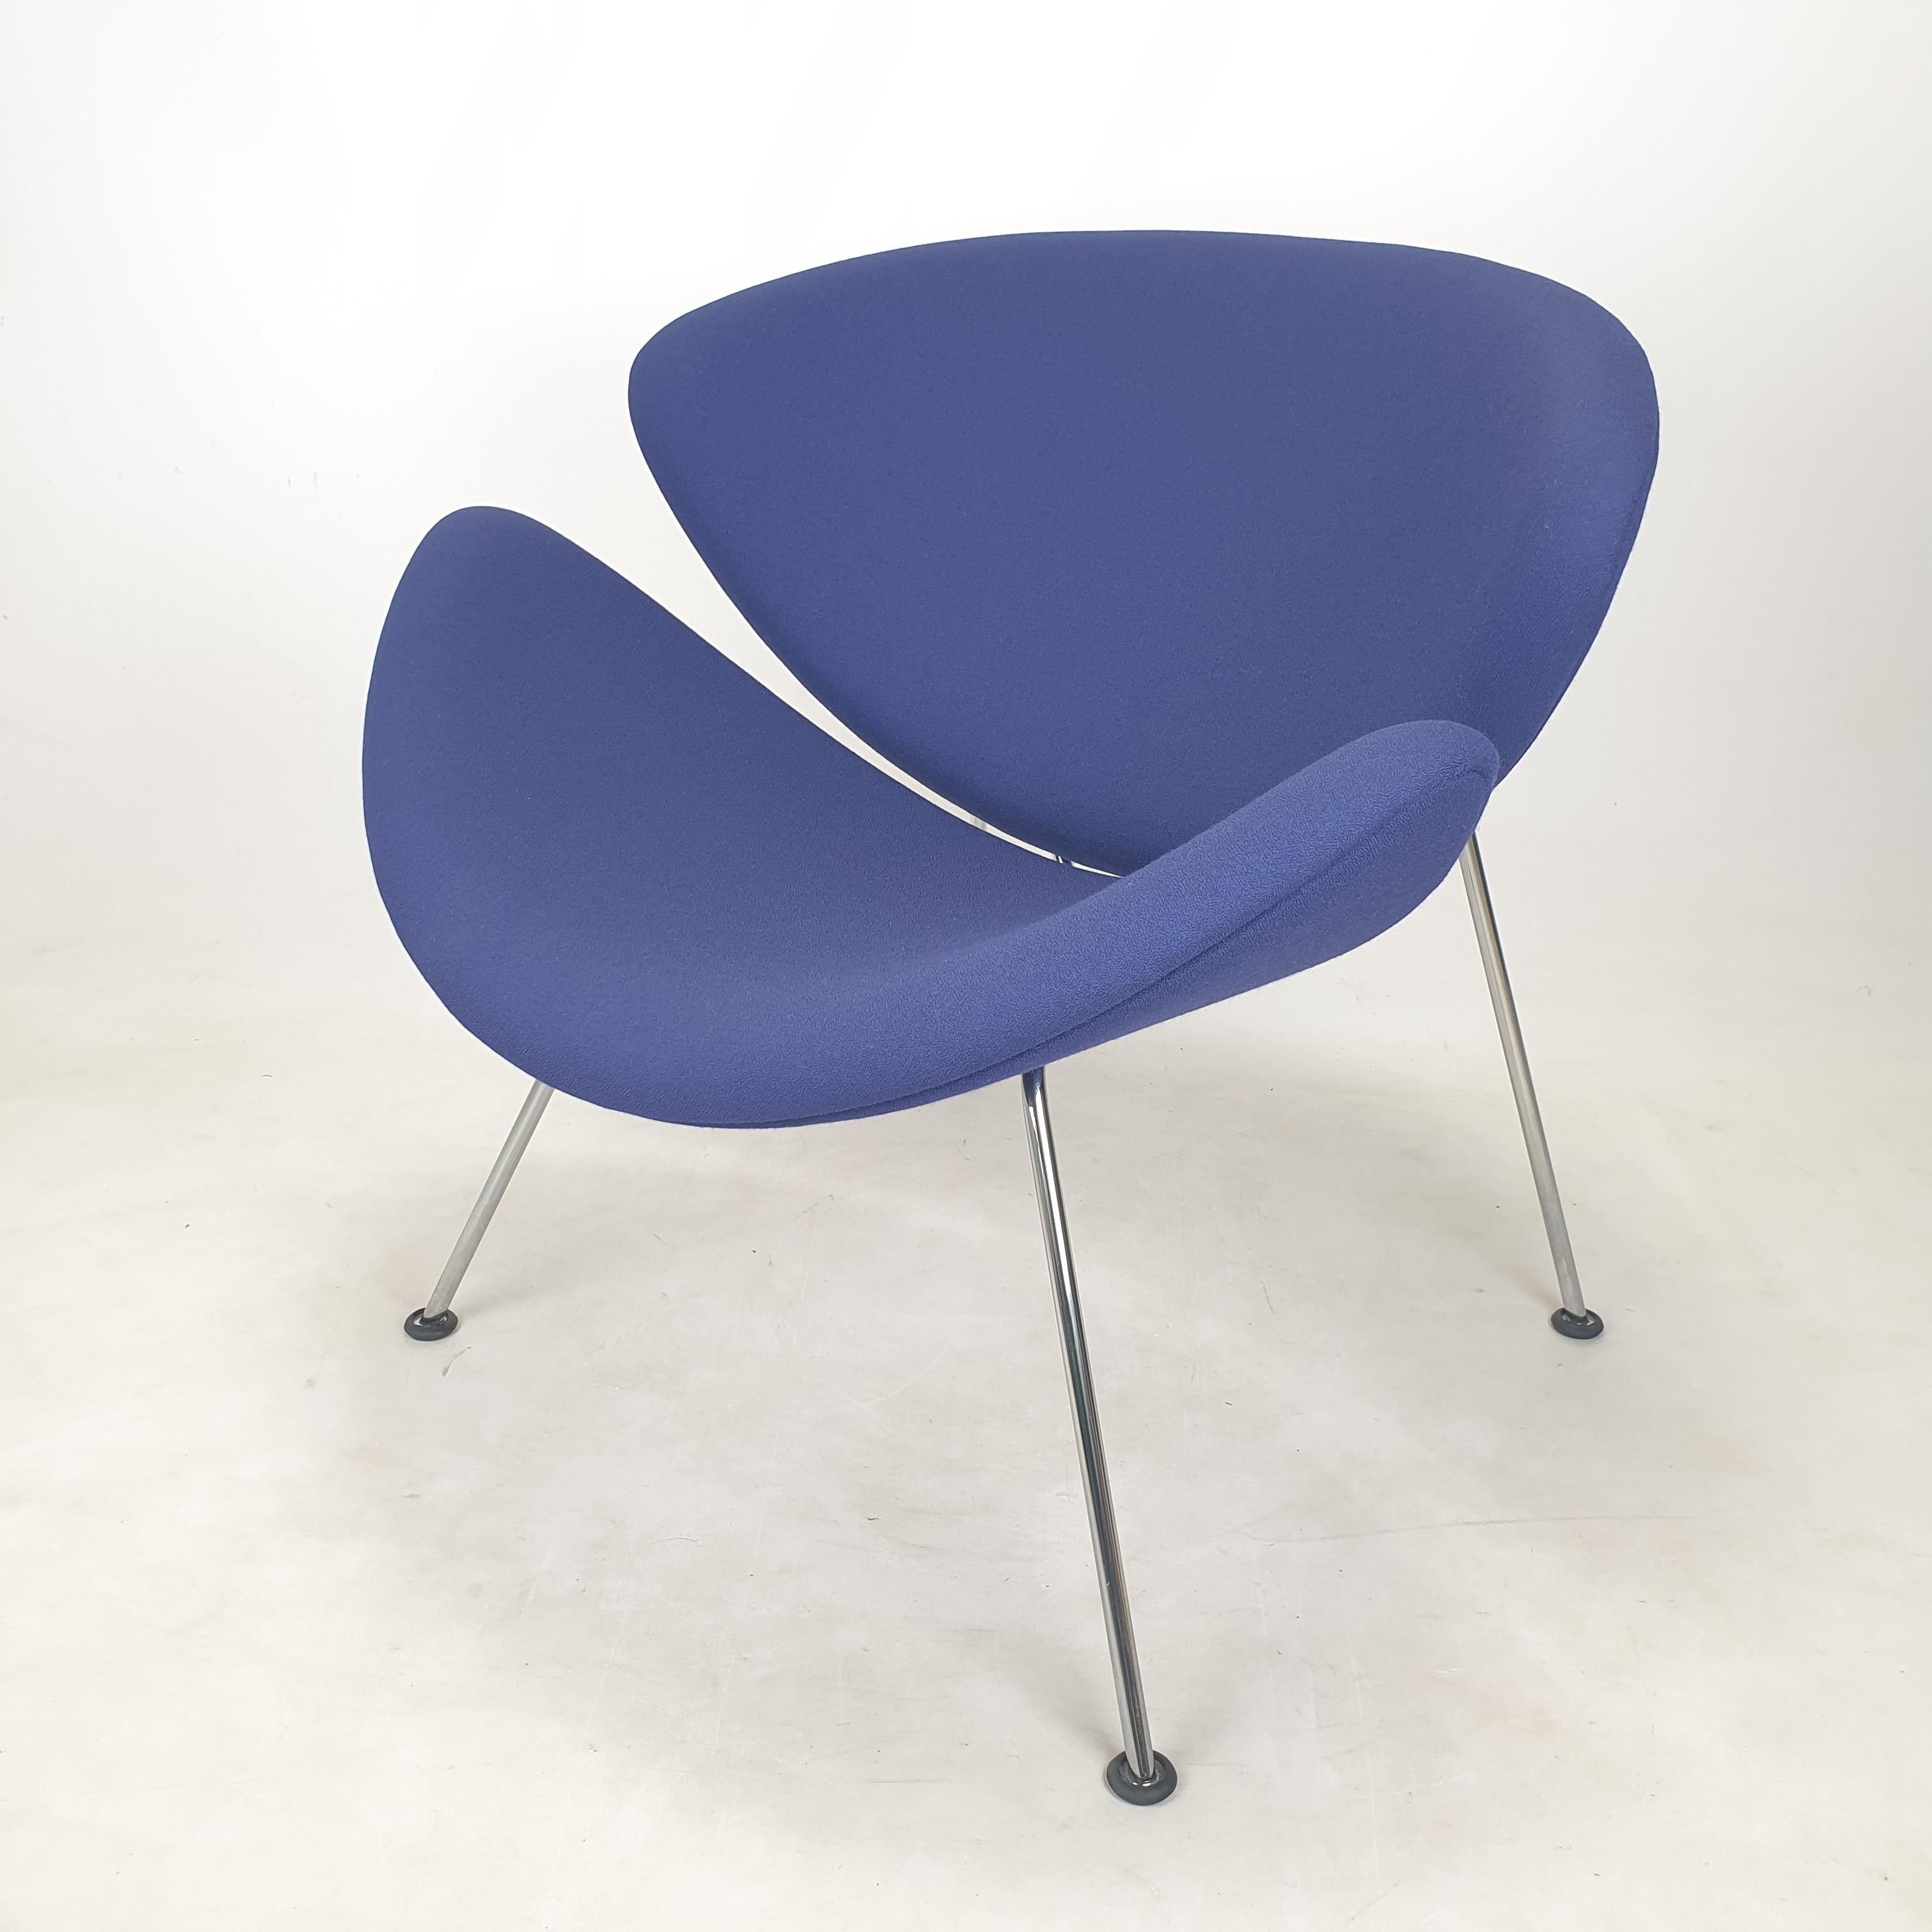 Der berühmte Artifort-Stuhl mit Orangenscheiben von Pierre Paulin. 
In den 60er Jahren entworfen und in den 80er Jahren hergestellt. 

Hübscher und sehr bequemer Stuhl. 
Er hat verchromte Metallbeine. 

Der originale Wollstoff ist in sehr